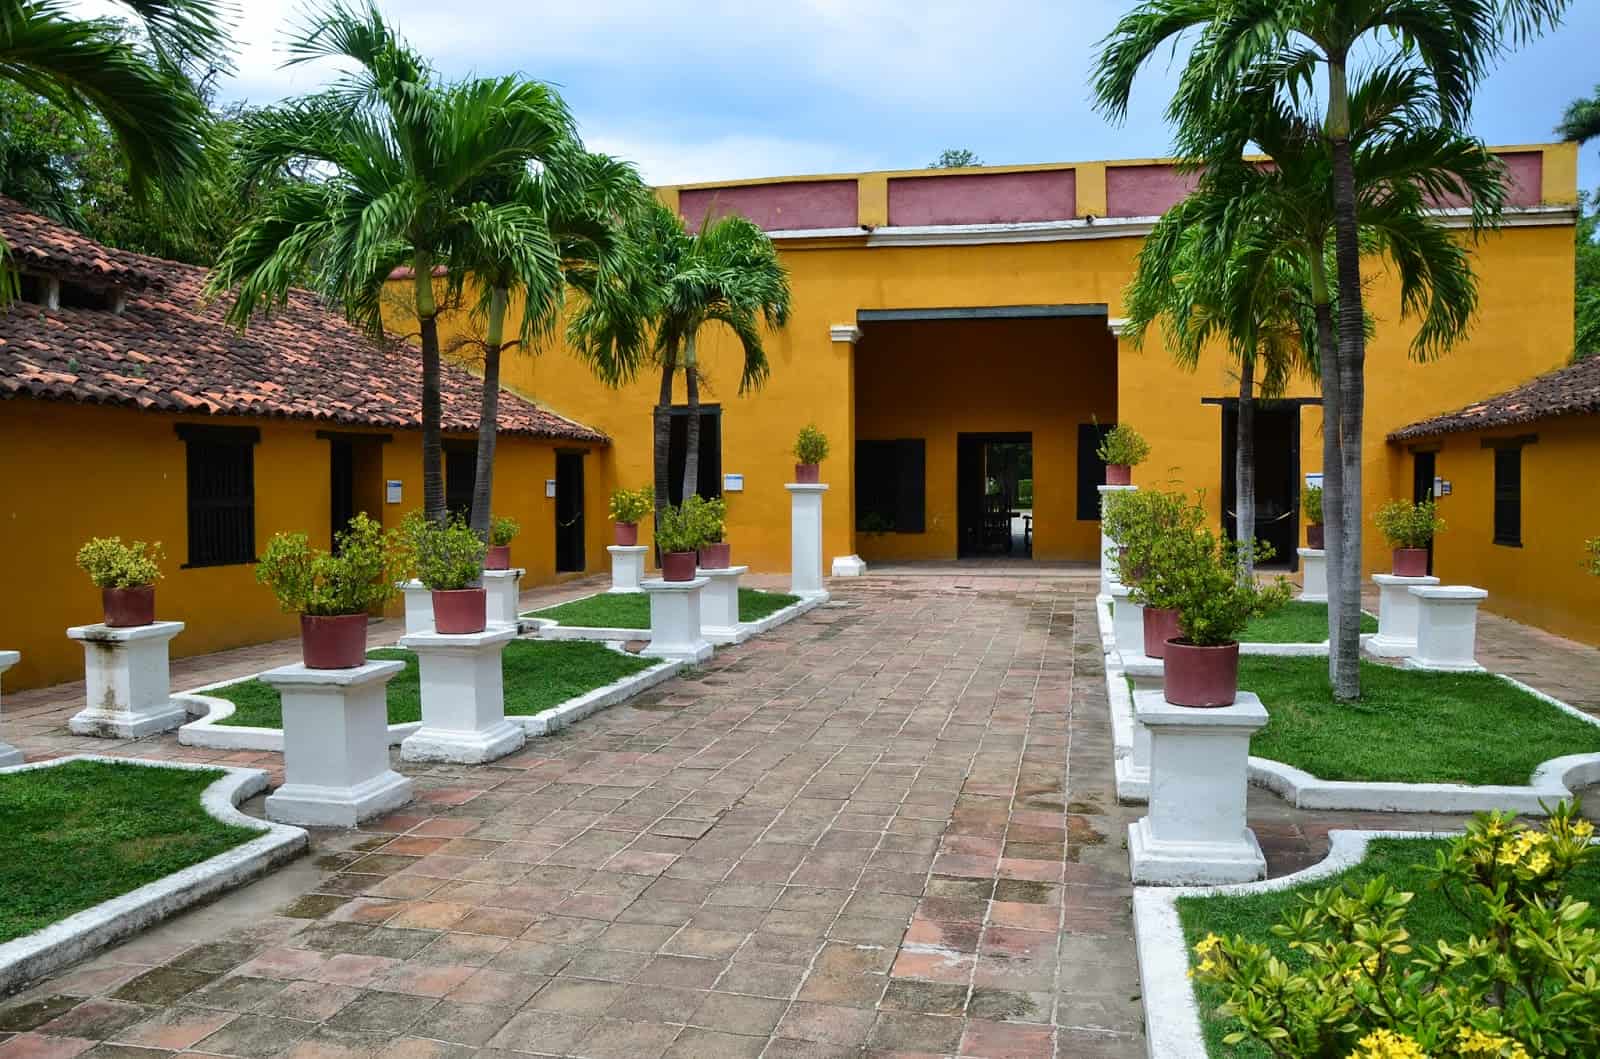 Courtyard at La Quinta de San Pedro Alejandrino in Santa Marta, Magdalena, Colombia